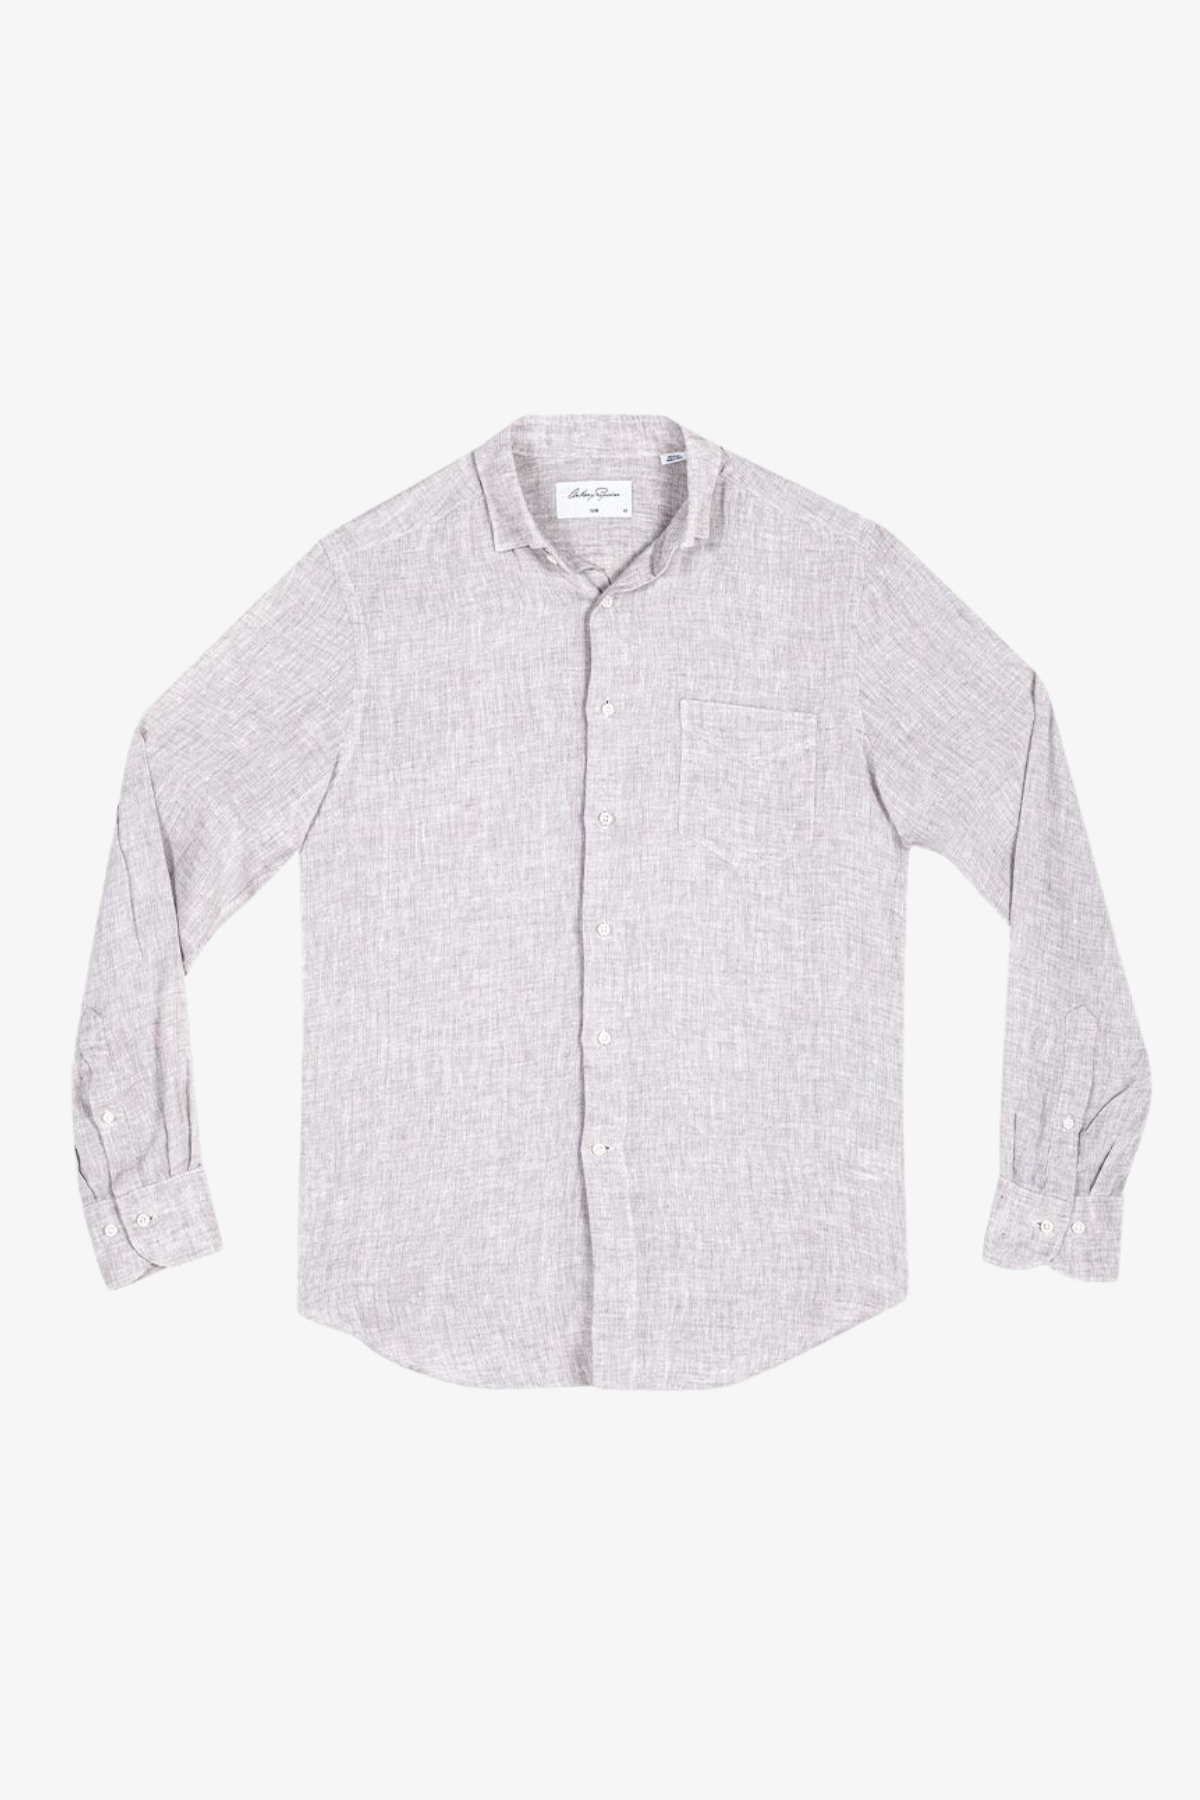 Riley - Warm Grey Shirt